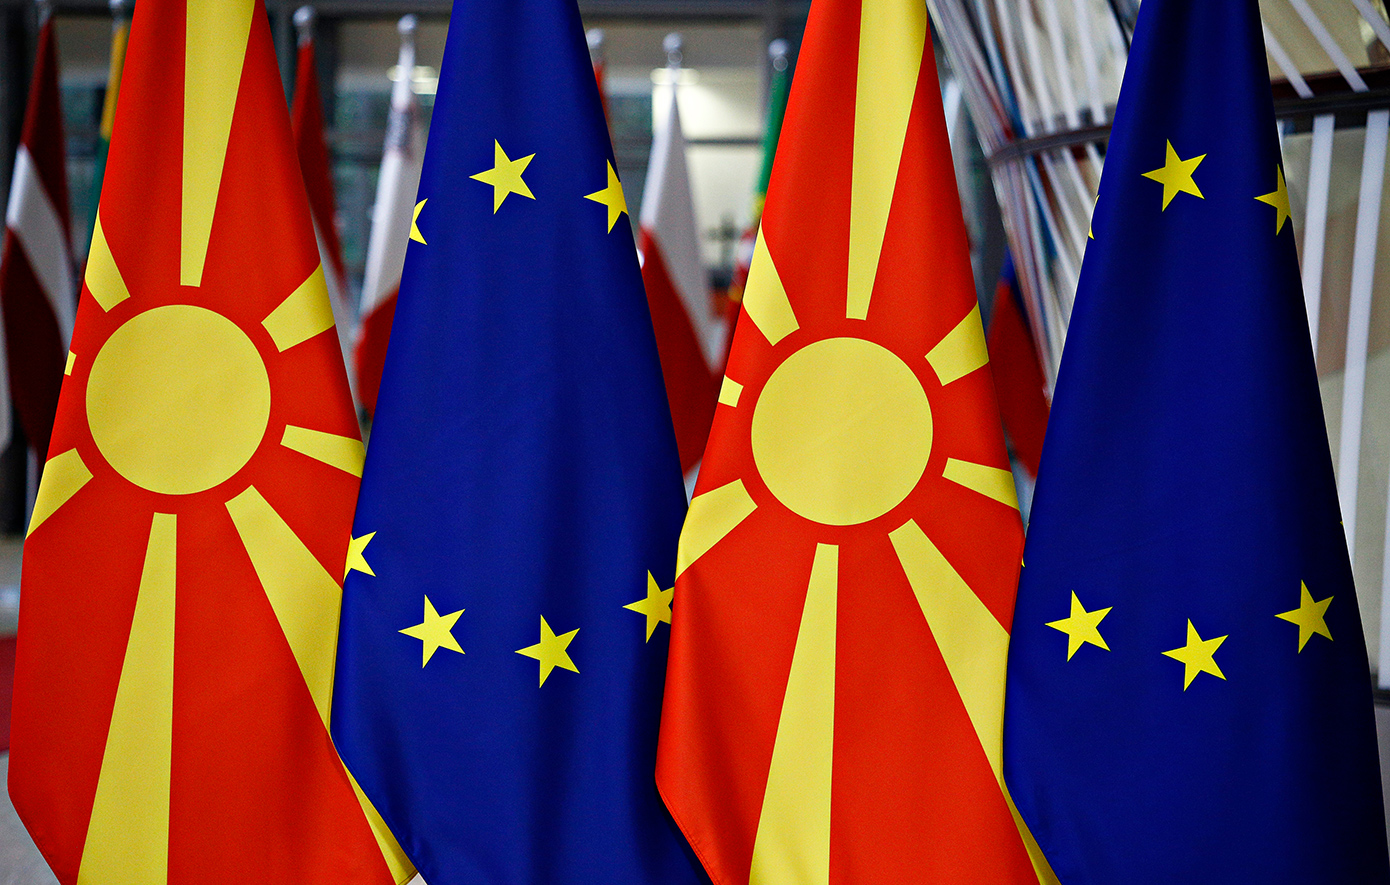 Πολιτική σύγκρουση στη Βόρεια Μακεδονία, ανάμεσα στα δύο μεγάλα κόμματα για τη Συμφωνία των Πρεσπών